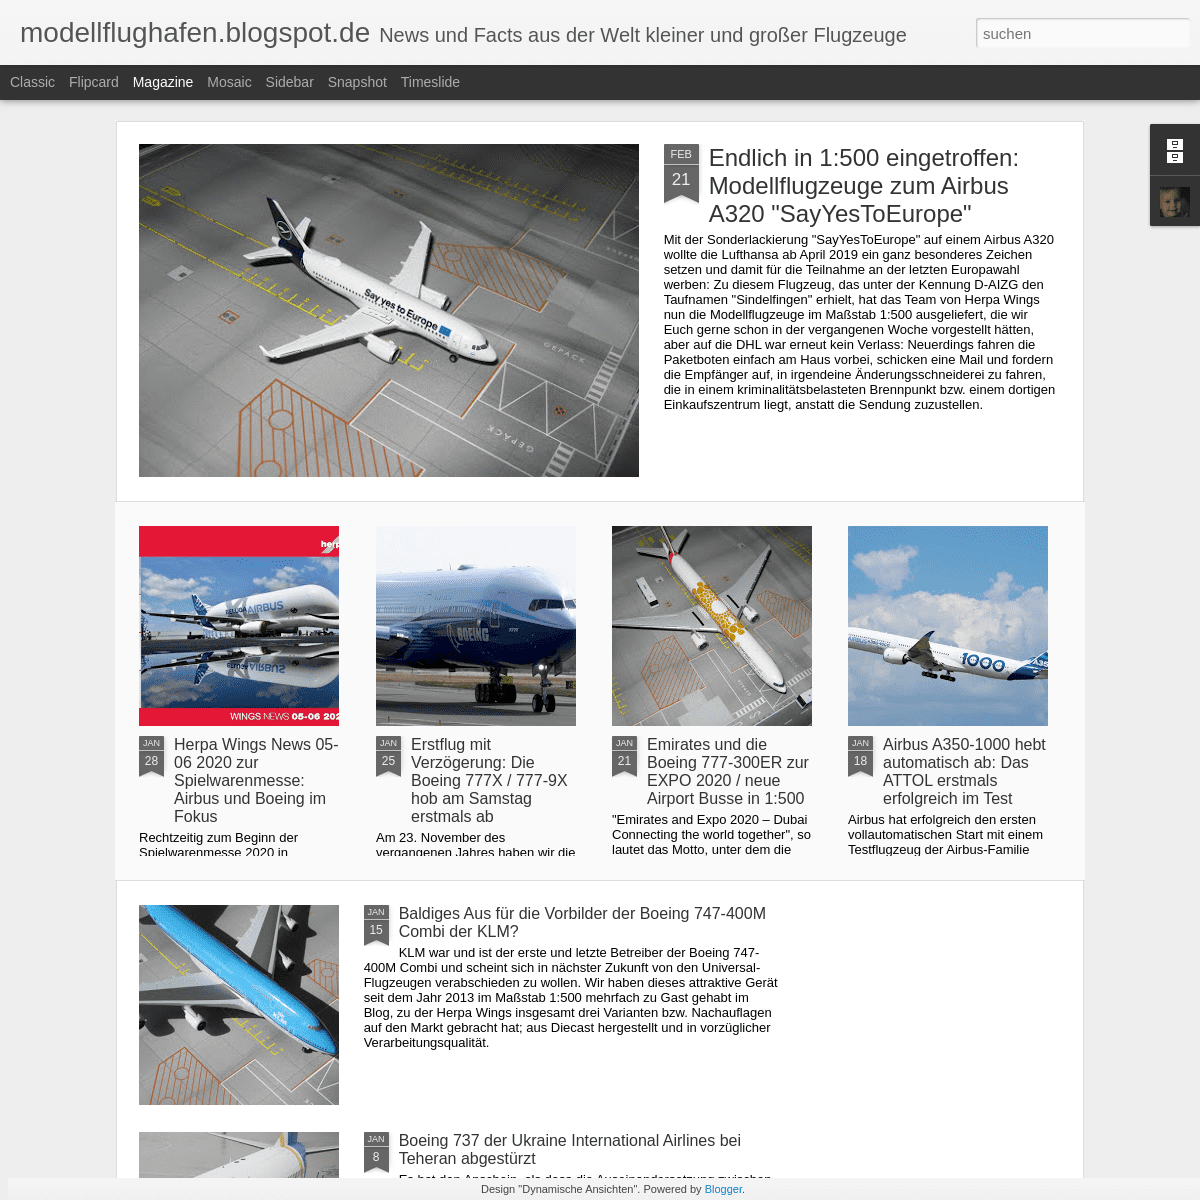 A complete backup of modellflughafen.blogspot.com